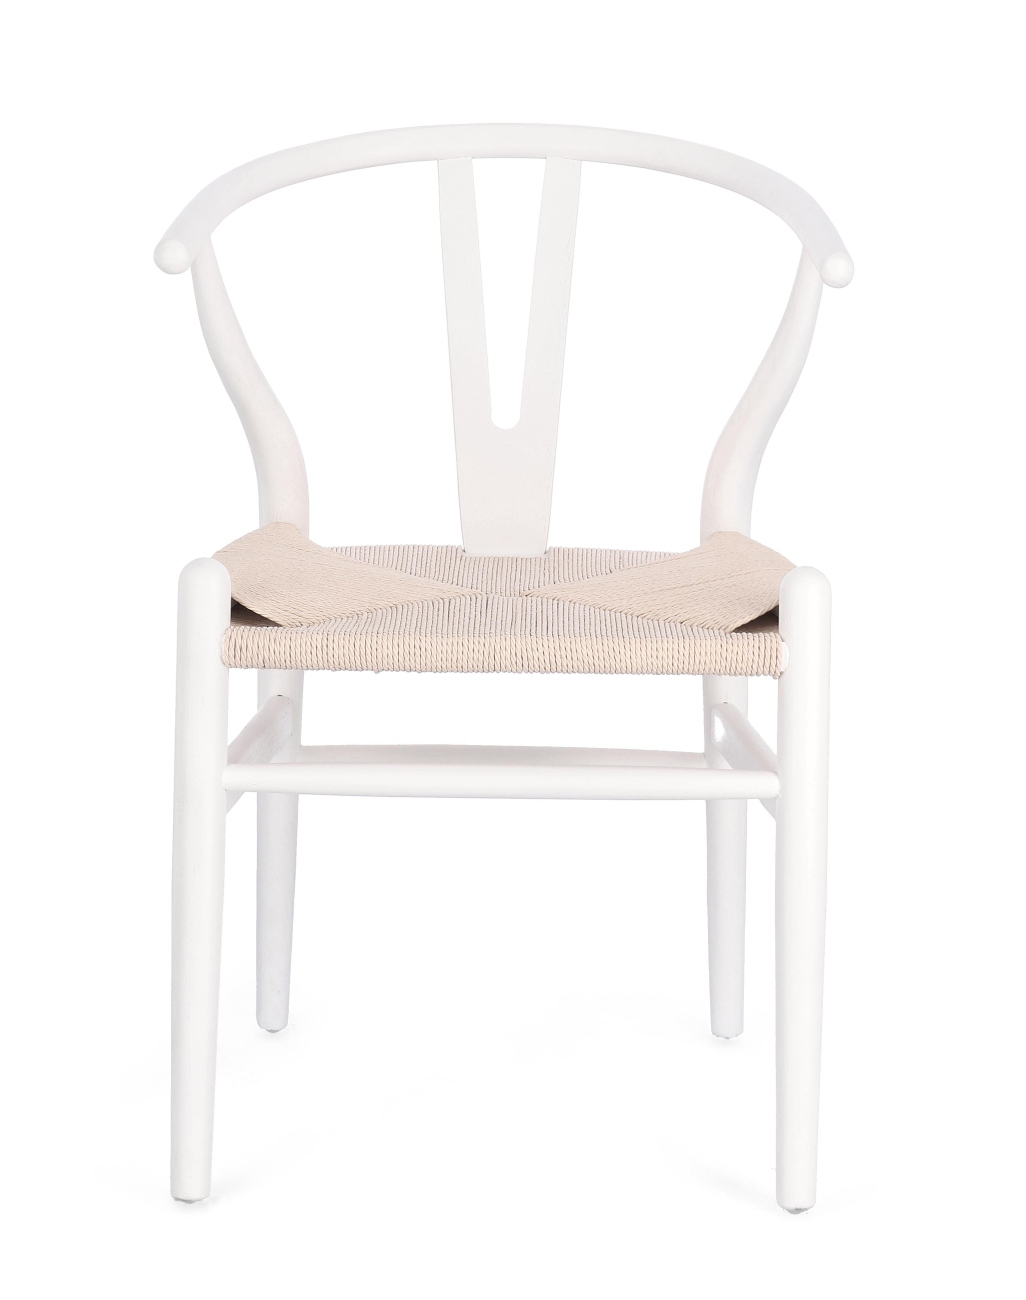 Der Esszimmerstuhl Artas überzeugt mit seinem modernen Stil. Gefertigt wurde er aus Seilen, welche einen natürlichen Farbton besitzt. Das Gestell ist aus Ulmenholz und hat ein weiße Farbe. Der Stuhl besitzt eine Sitzhöhe von 46 cm.